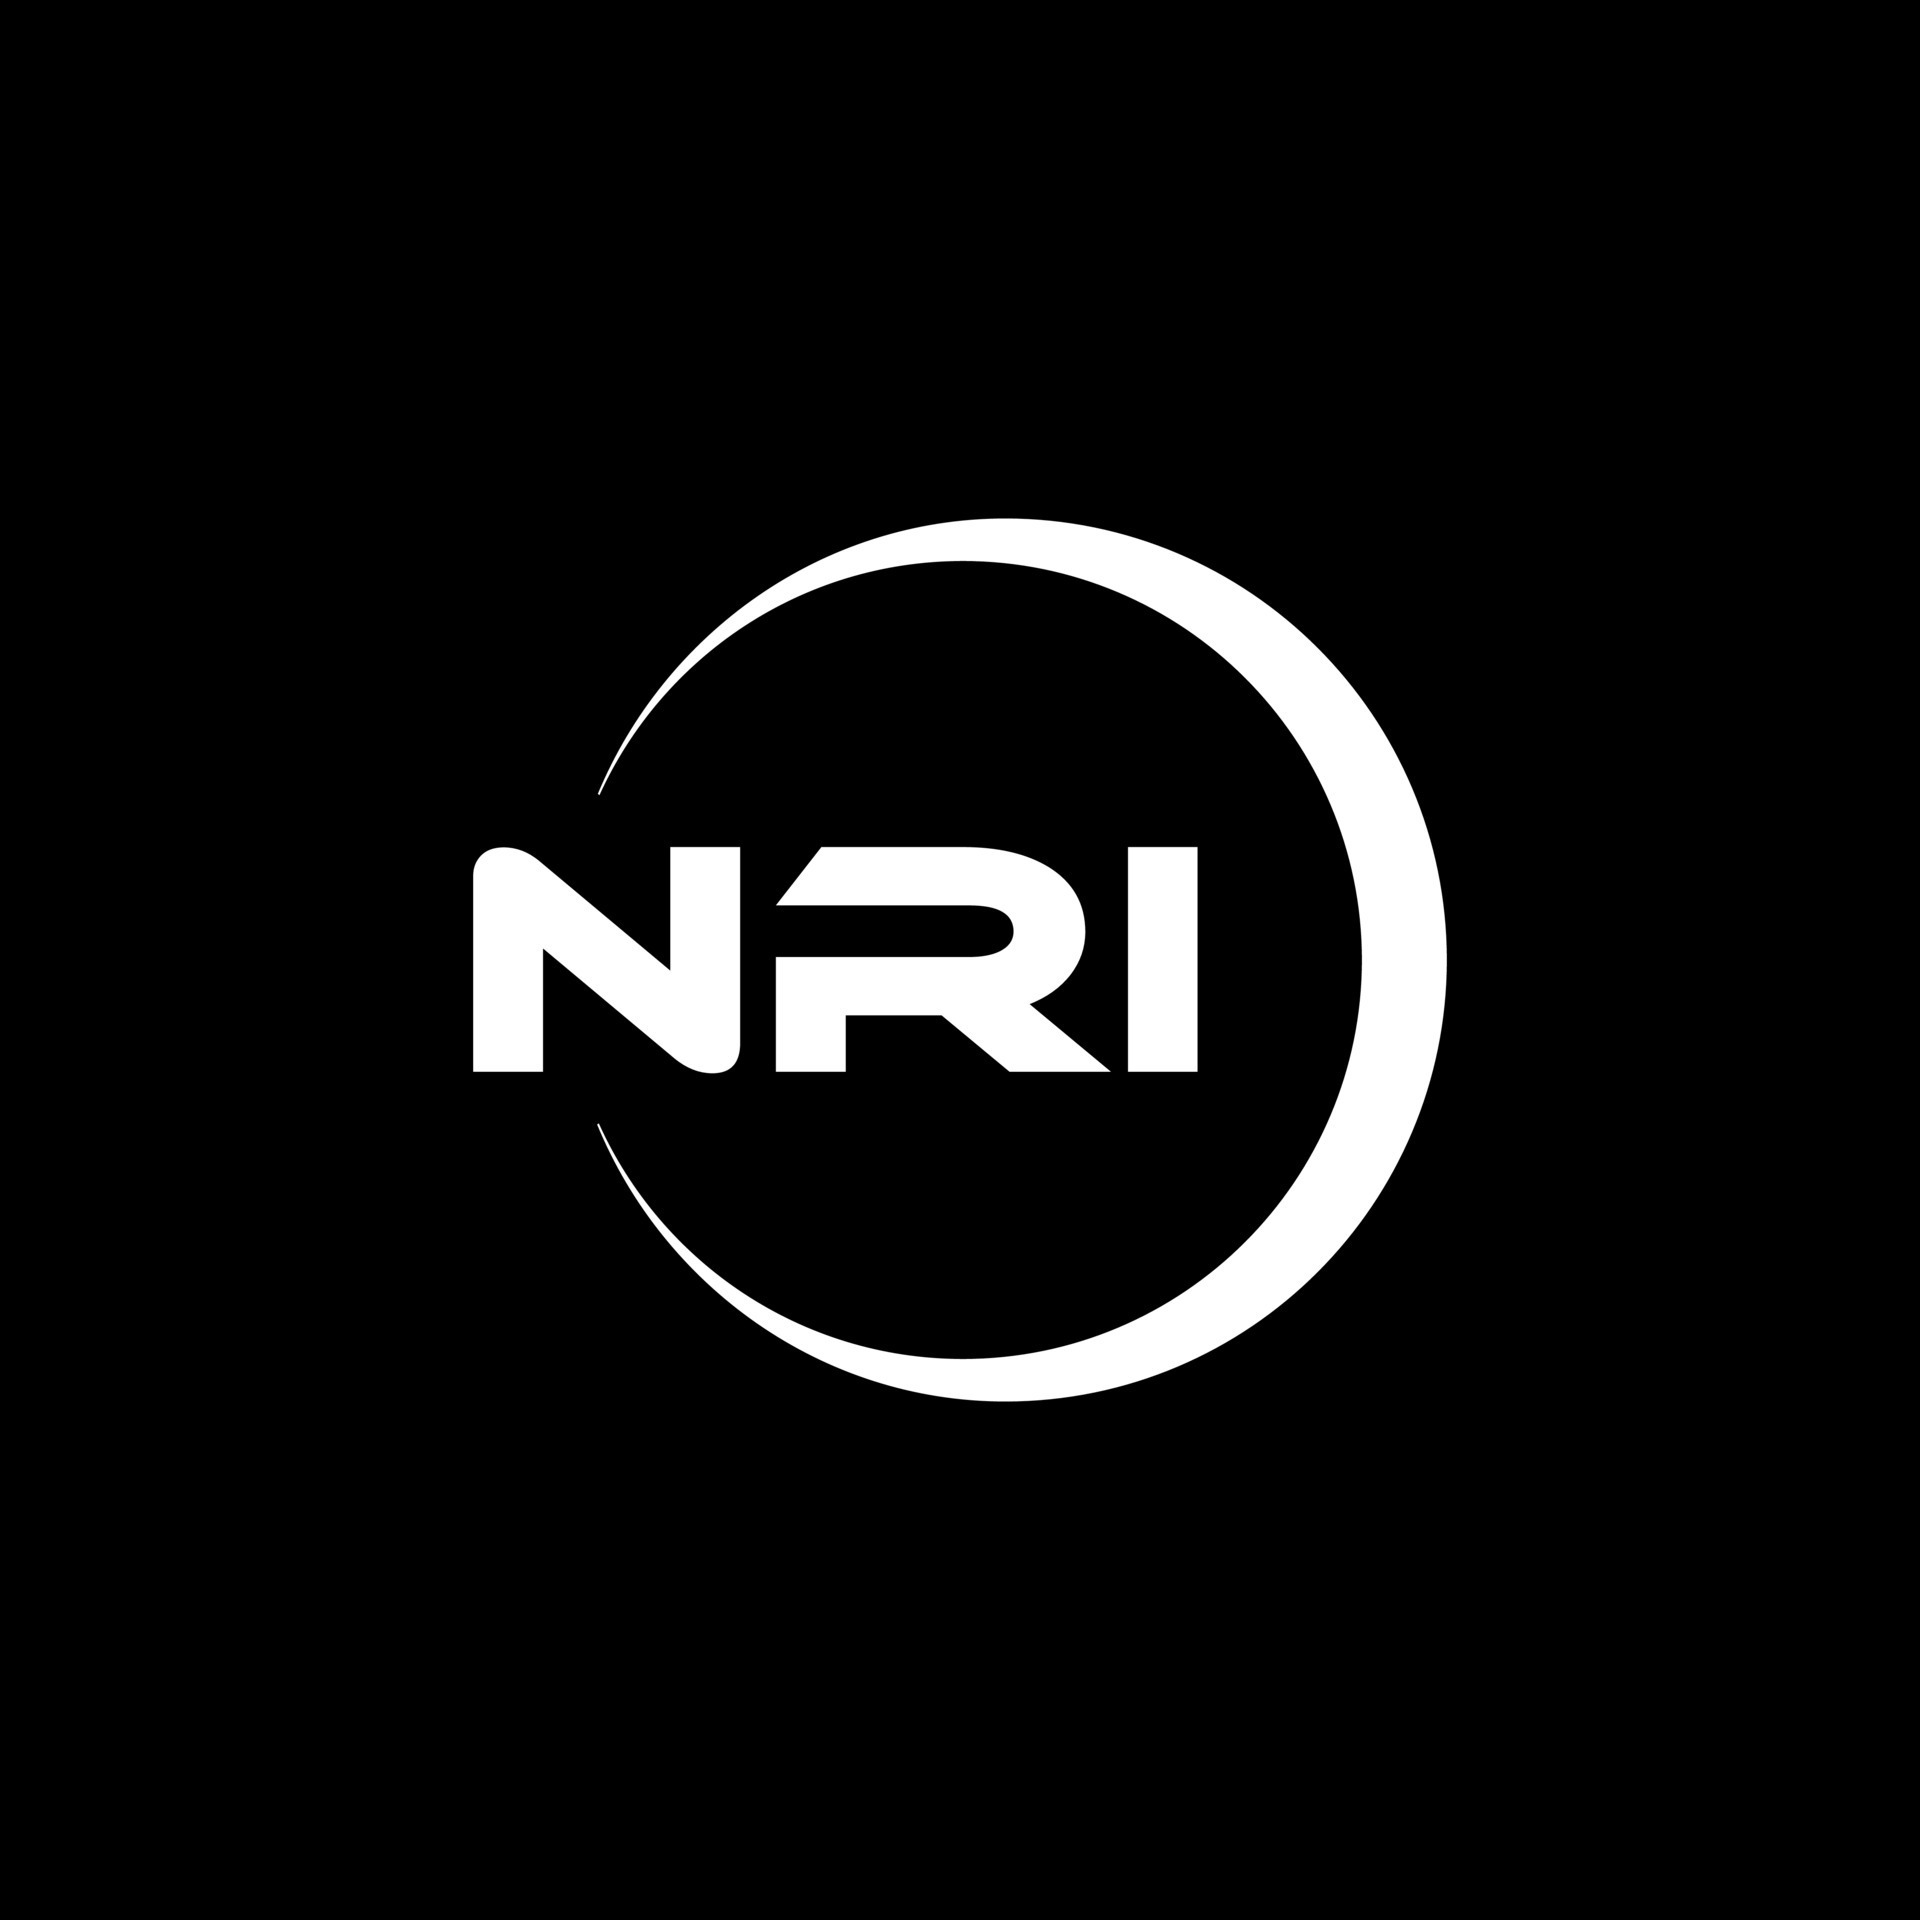 NRI letter logo design in illustration. Vector logo, calligraphy ...